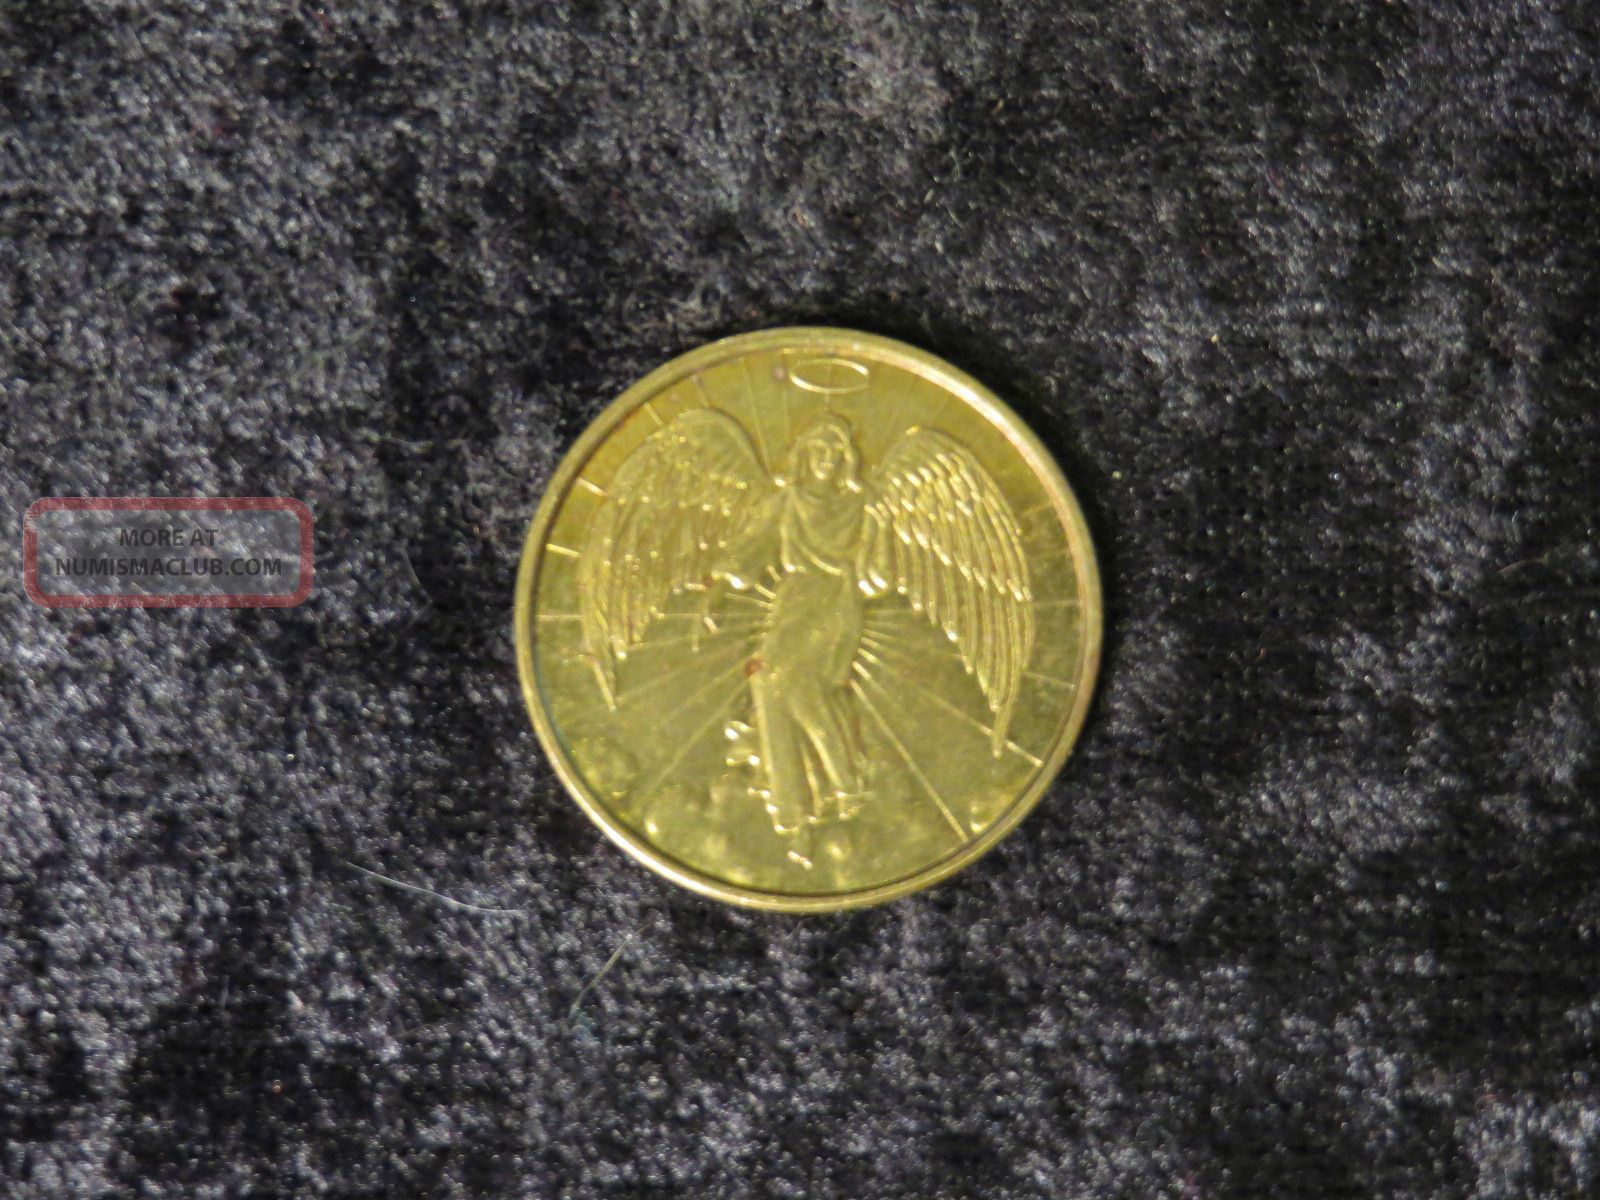 Guarduan Angel Gold Toned Brass Good Luck Token Coin - Flip1600 x 1200